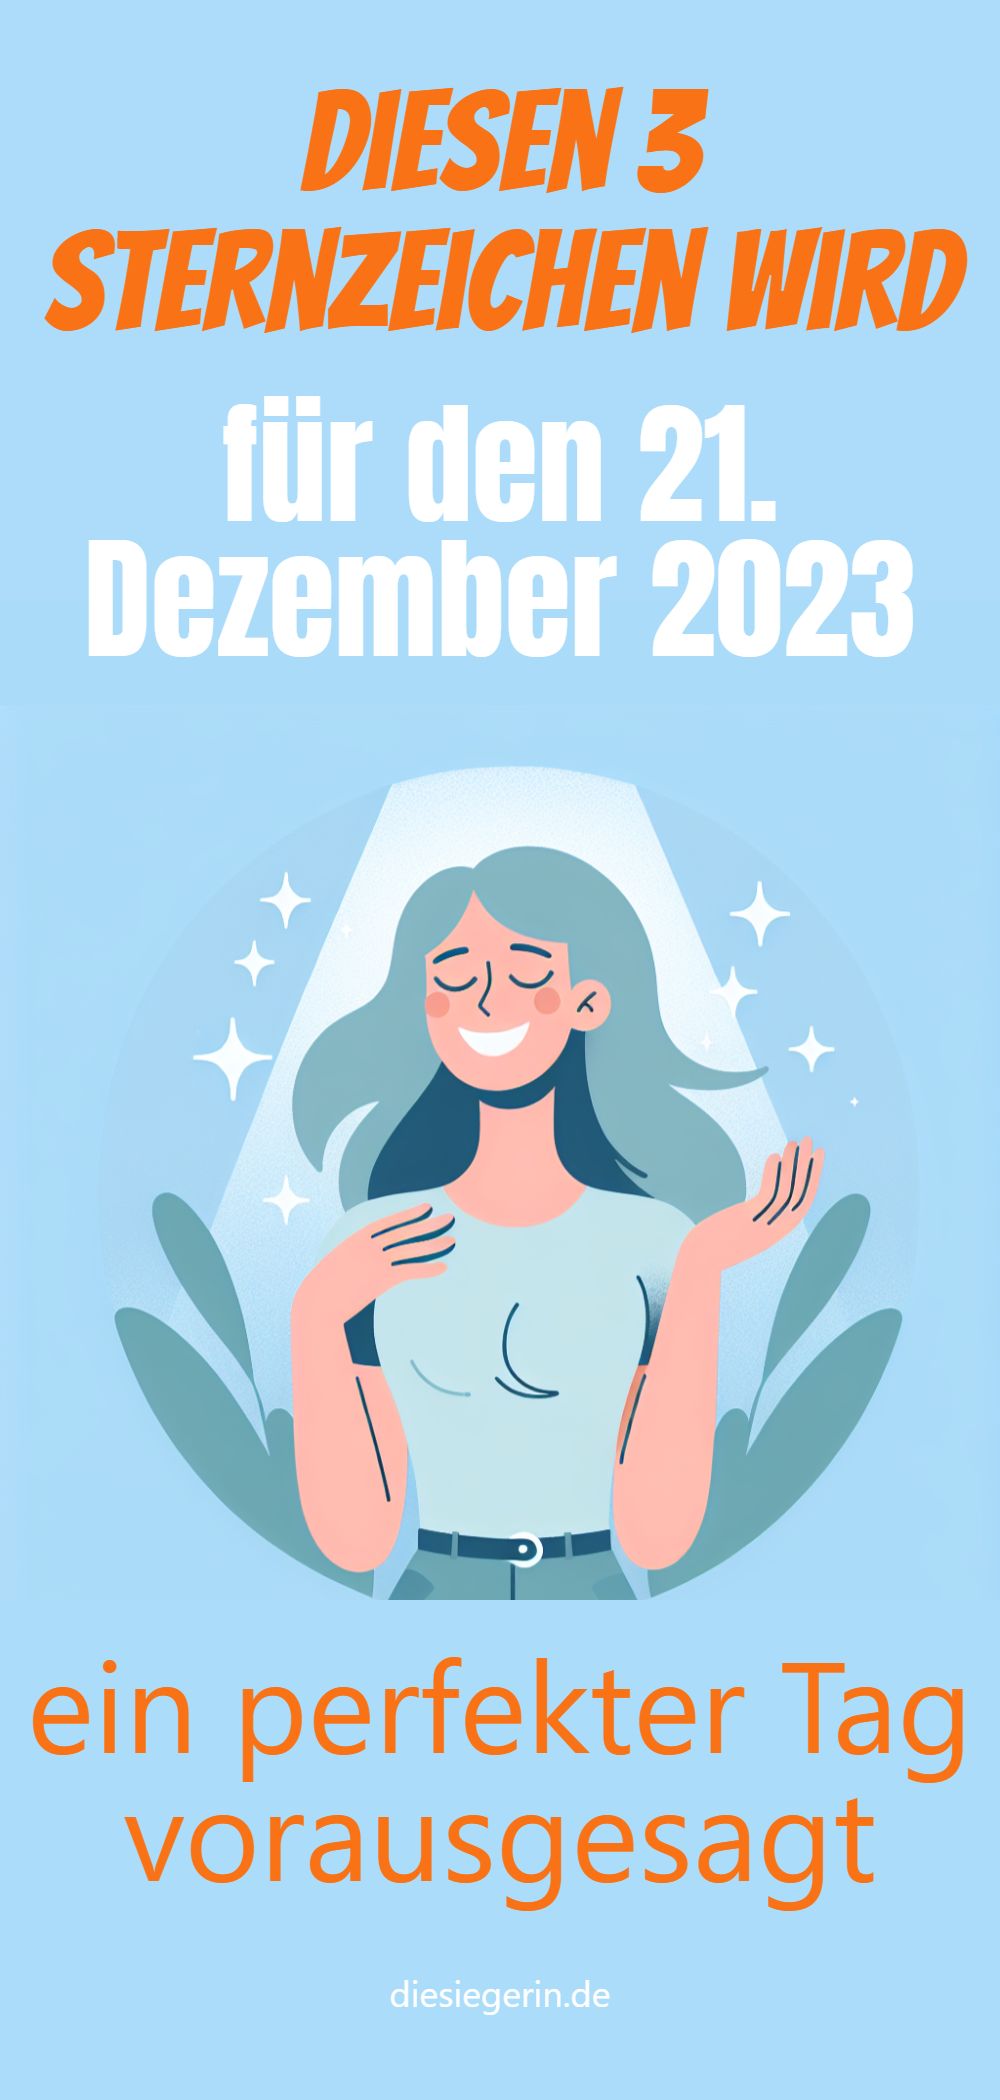 Diesen 3 Sternzeichen wird für den 21. Dezember 2023 ein perfekter Tag vorausgesagt